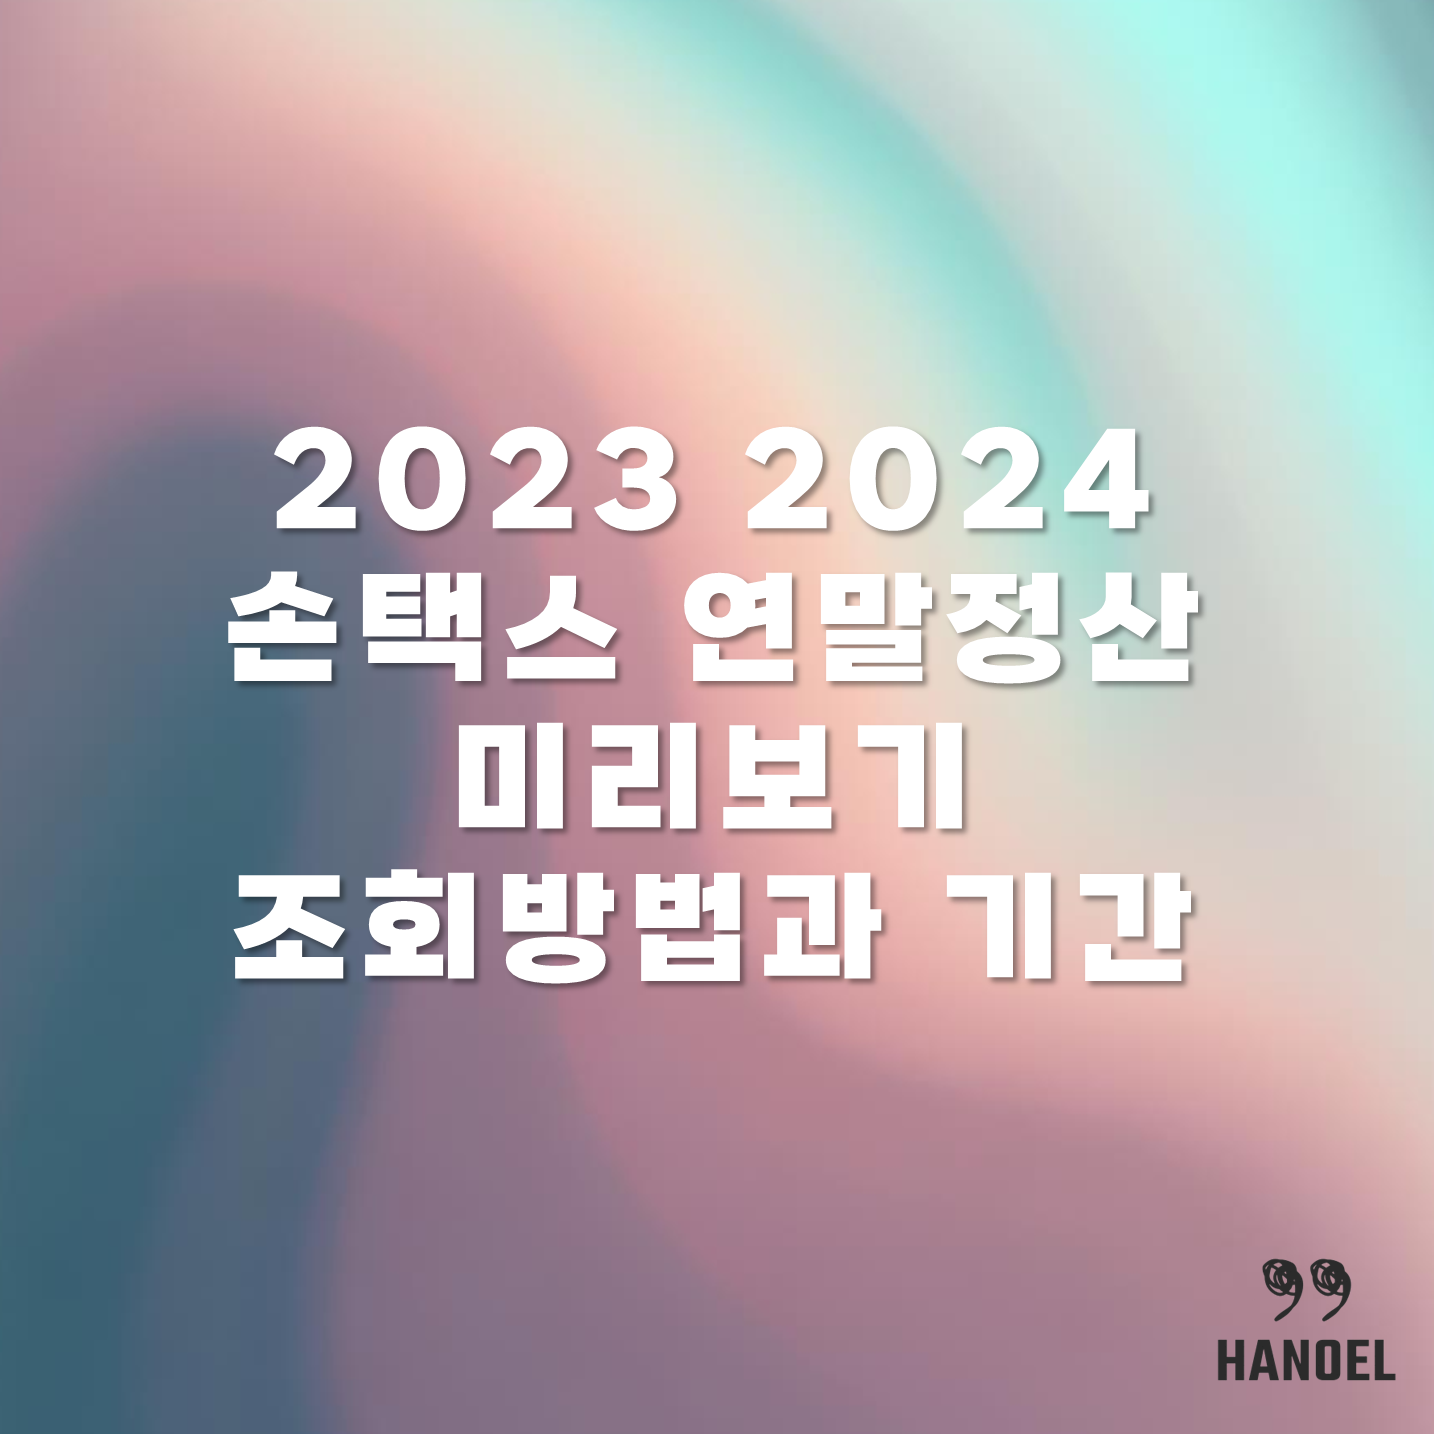 2023 2024 손택스 연말정산 미리보기 조회방법과 기간